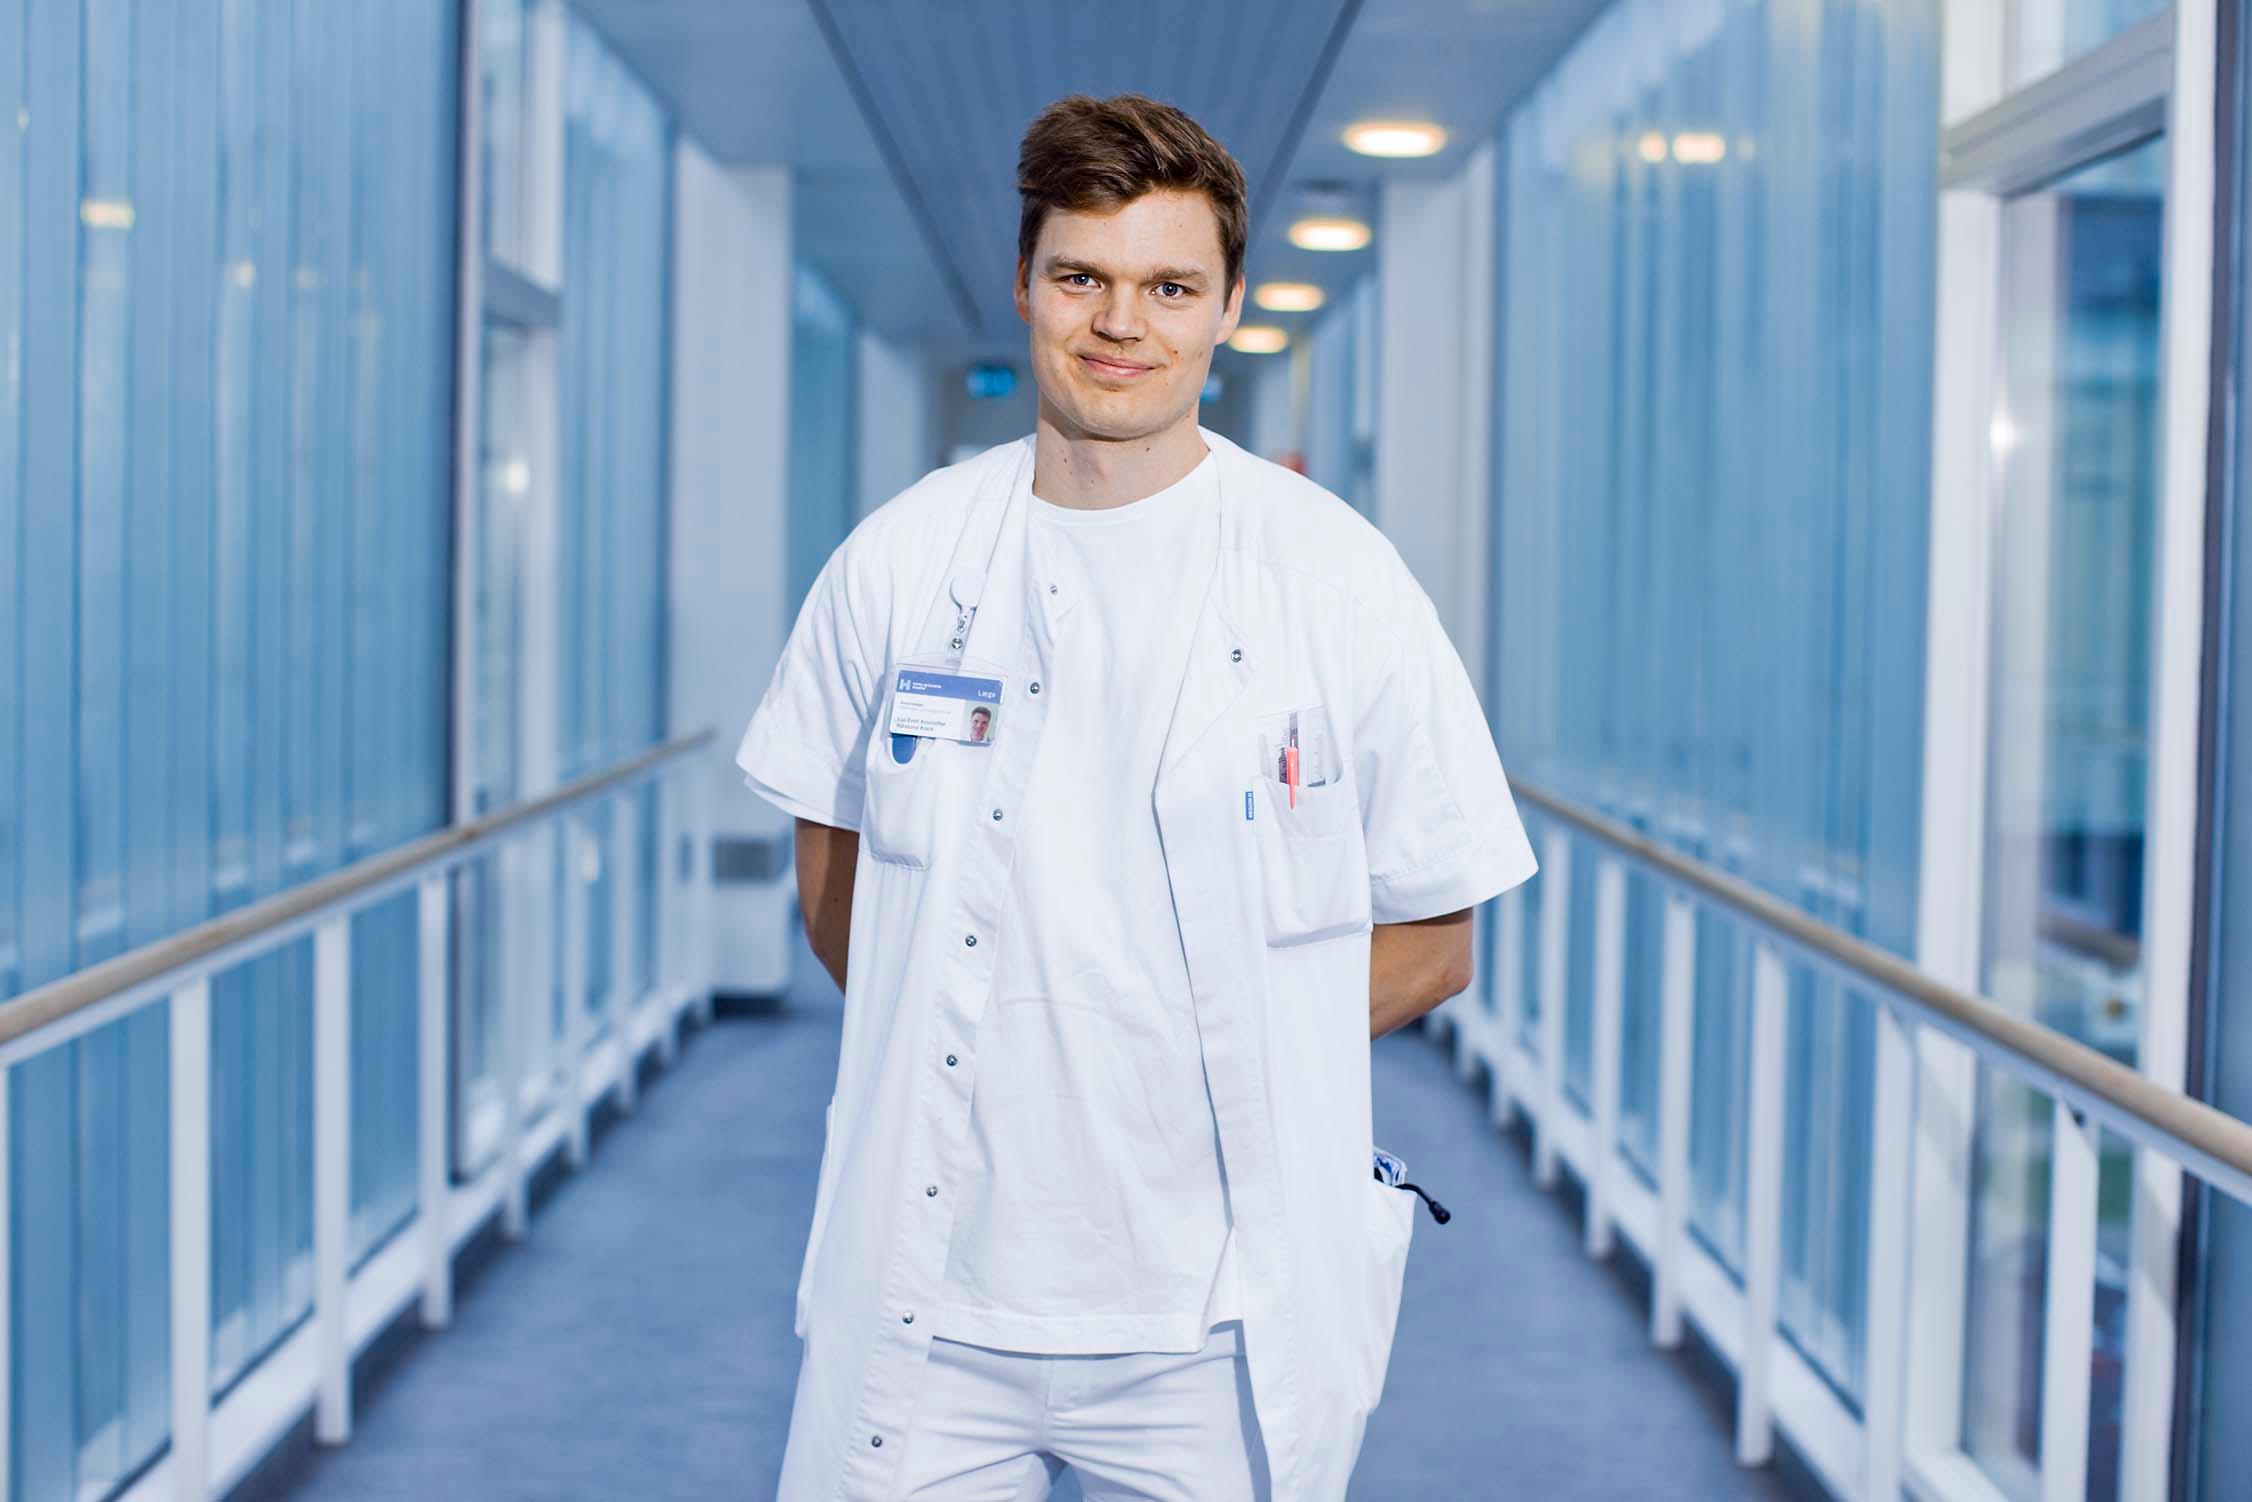 Lui Näslund Koch arbejder 60 procent i klinik og 40 procent som FTR. I gennemsnit har han tre dage om ugen til klinisk arbejde. Foto: Claus Boesen 